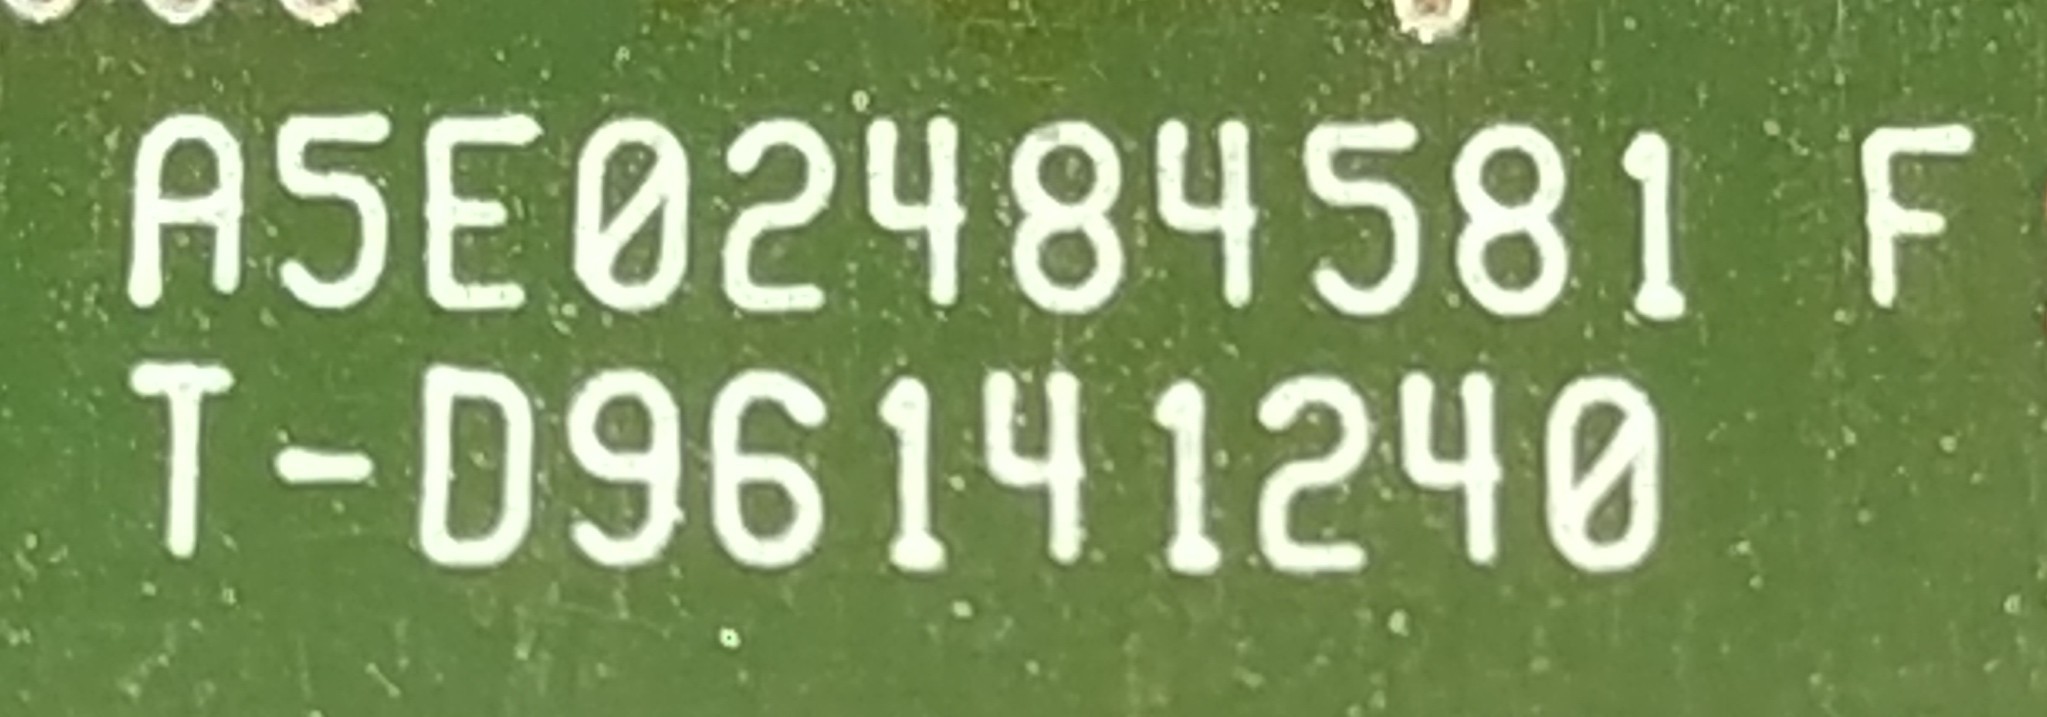 SIEMENS PCB CARD A5E02484581 F